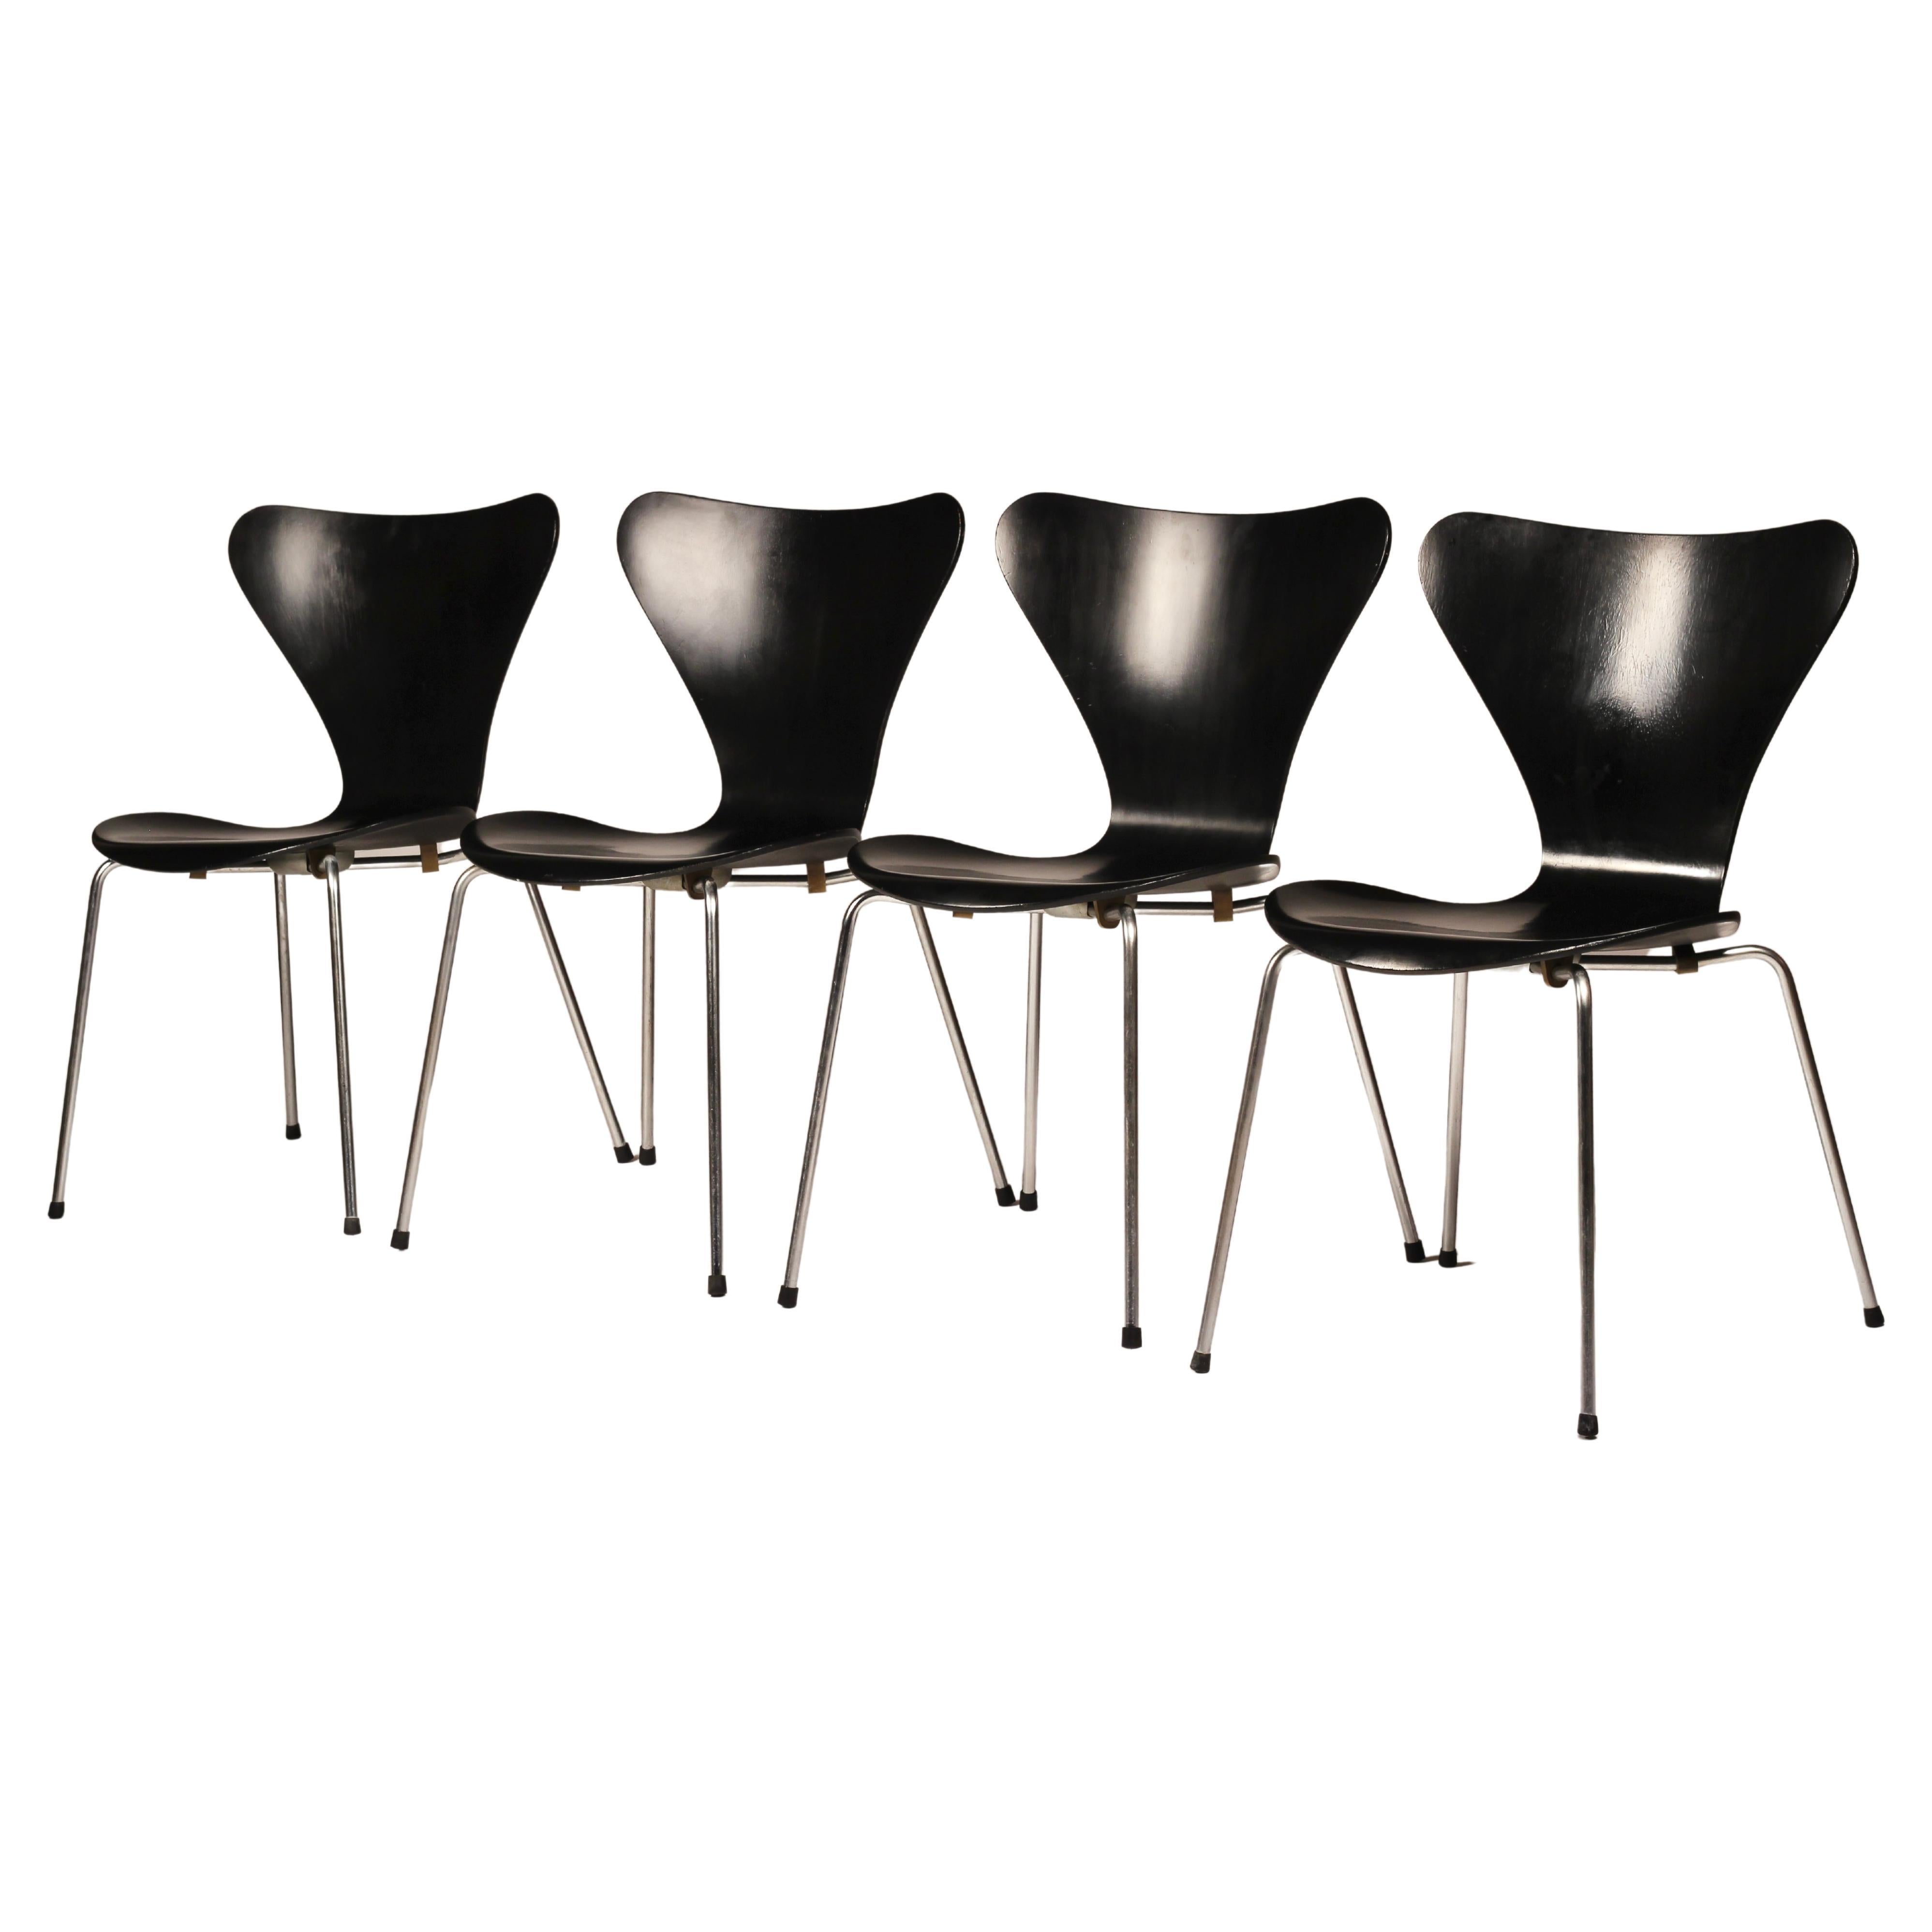 Icône intemporelle du design, ce merveilleux ensemble de huit chaises empilables noires du modèle #3107 (également connu sous le nom de 